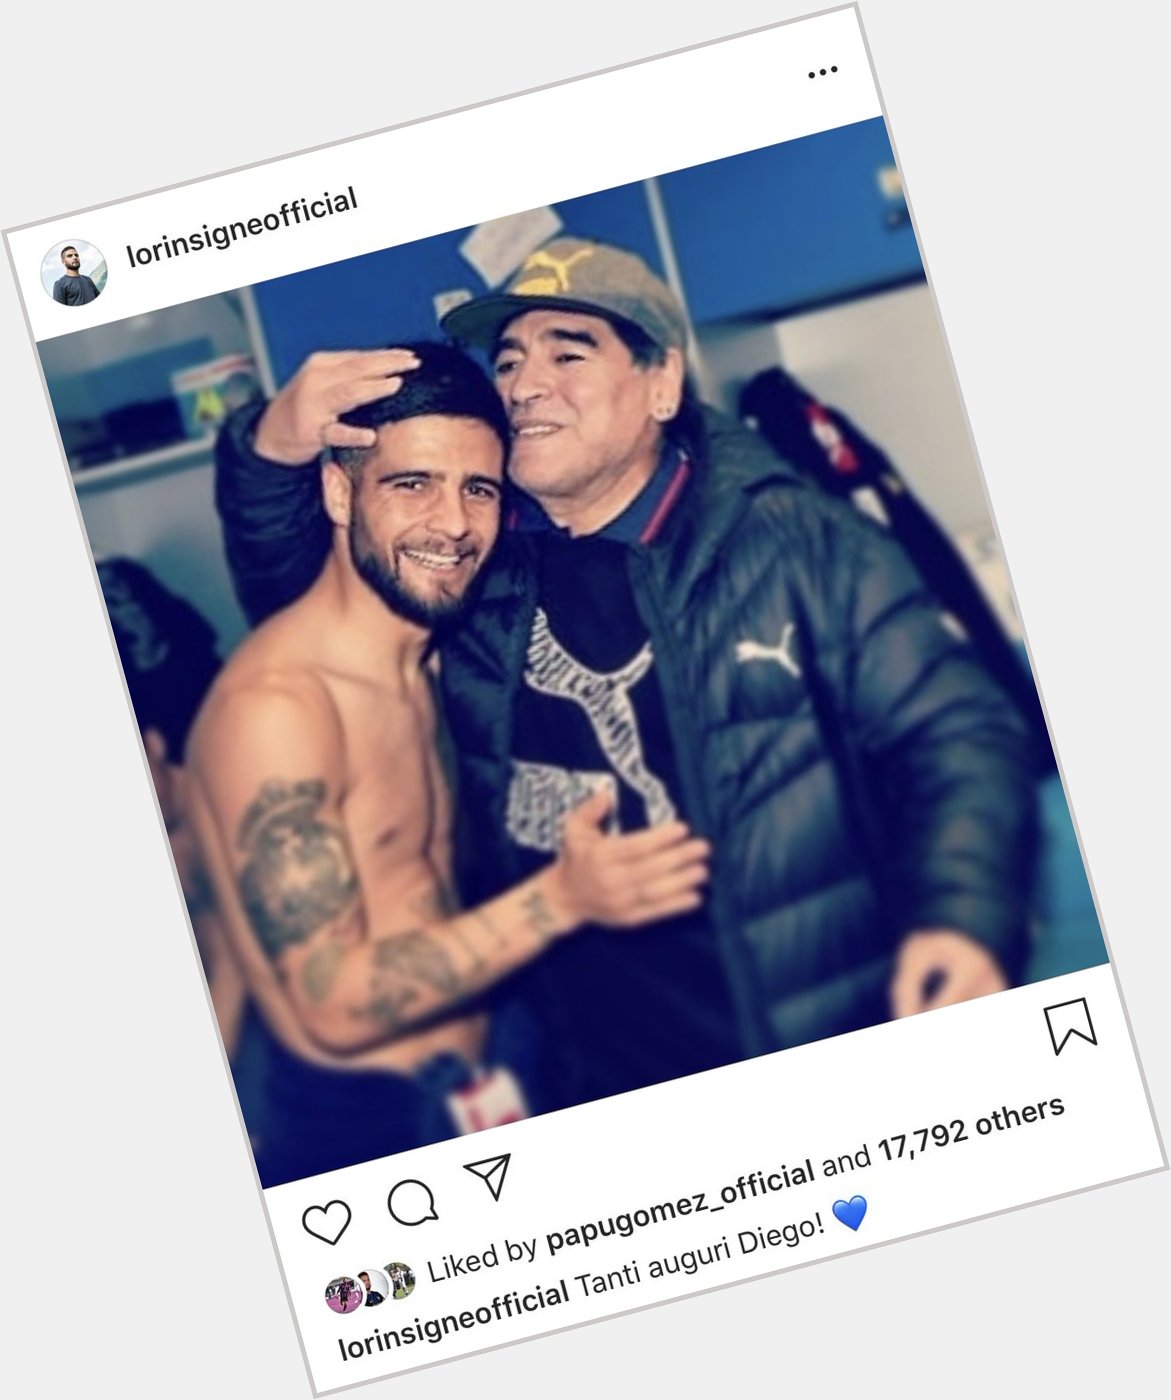 Lorenzo Insigne wishing his idol Diego Maradona a happy birthday today. 